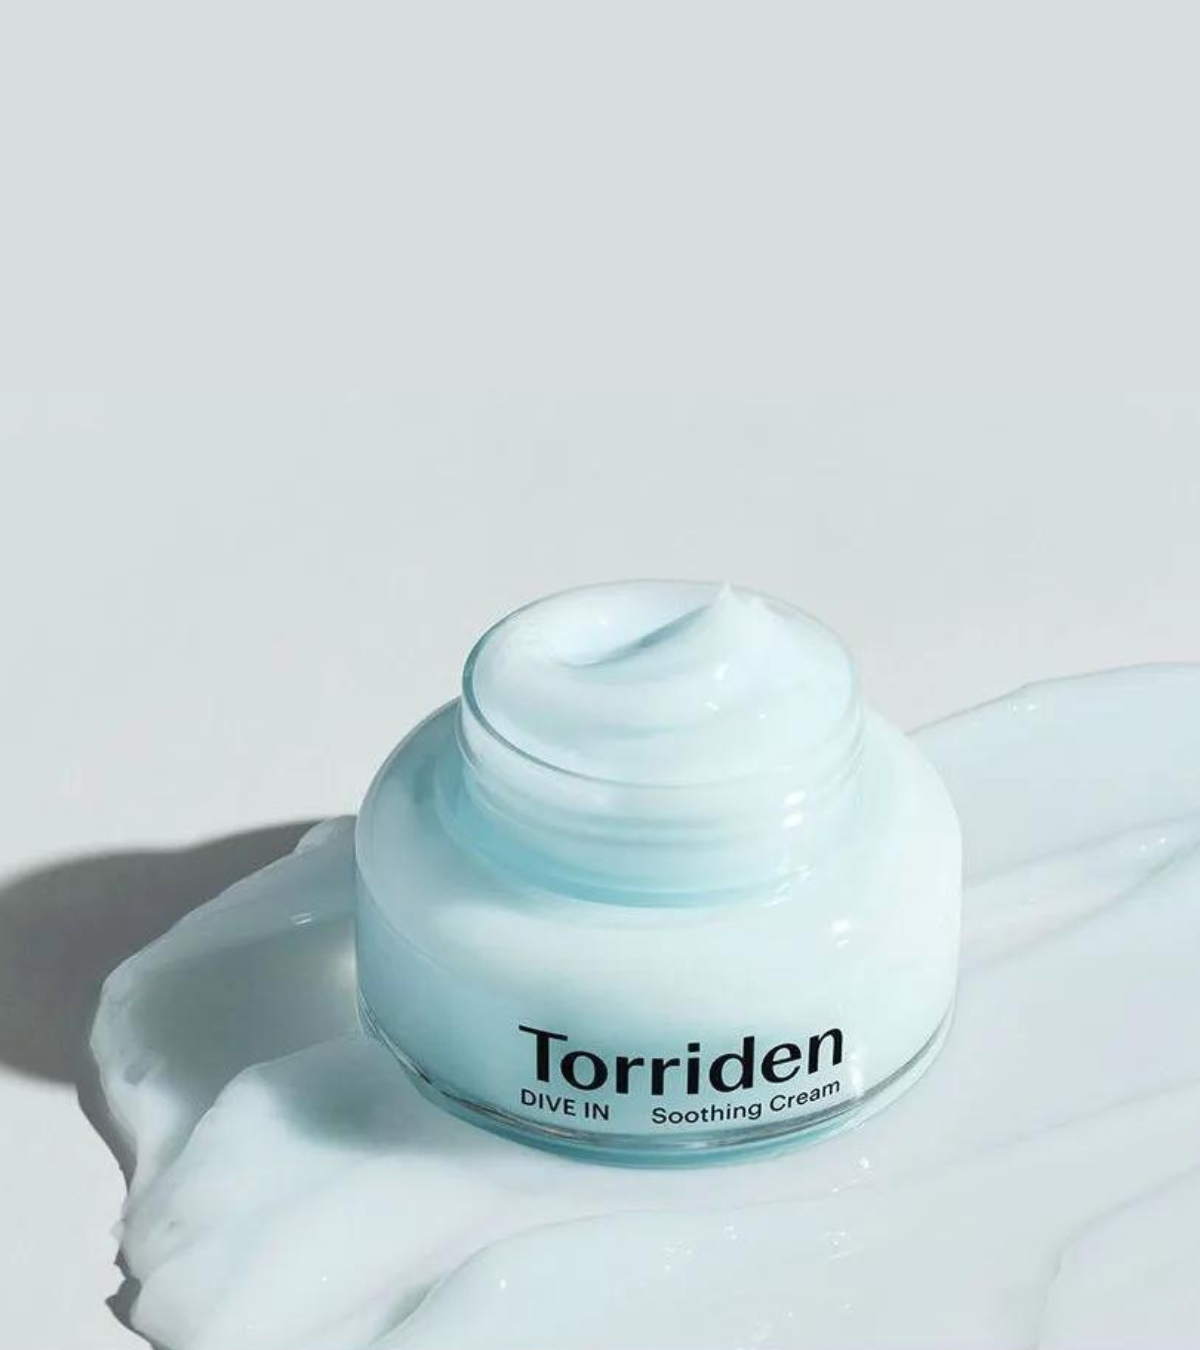 Torriden - DIVE-IN Low Molecular Hyaluronic Acid Soothing Cream, Torriden | Meka.sk